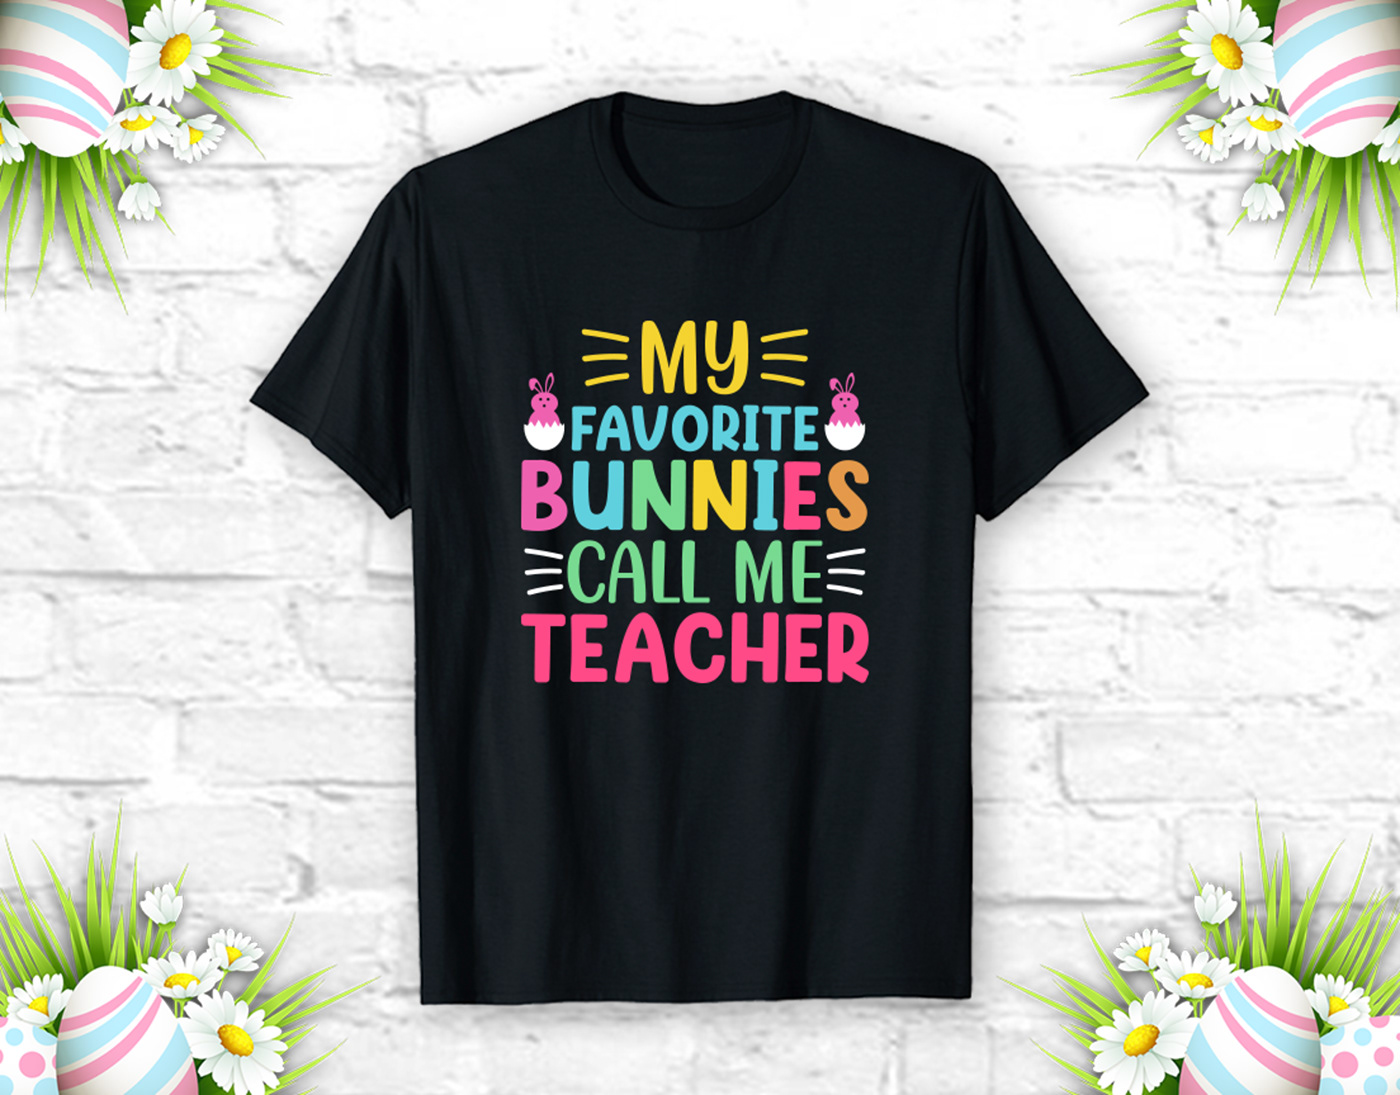 easter day tshirt, bunny, bunny tshirt, t shirt mockup, t shirt design ideas, free t-shirt, egg